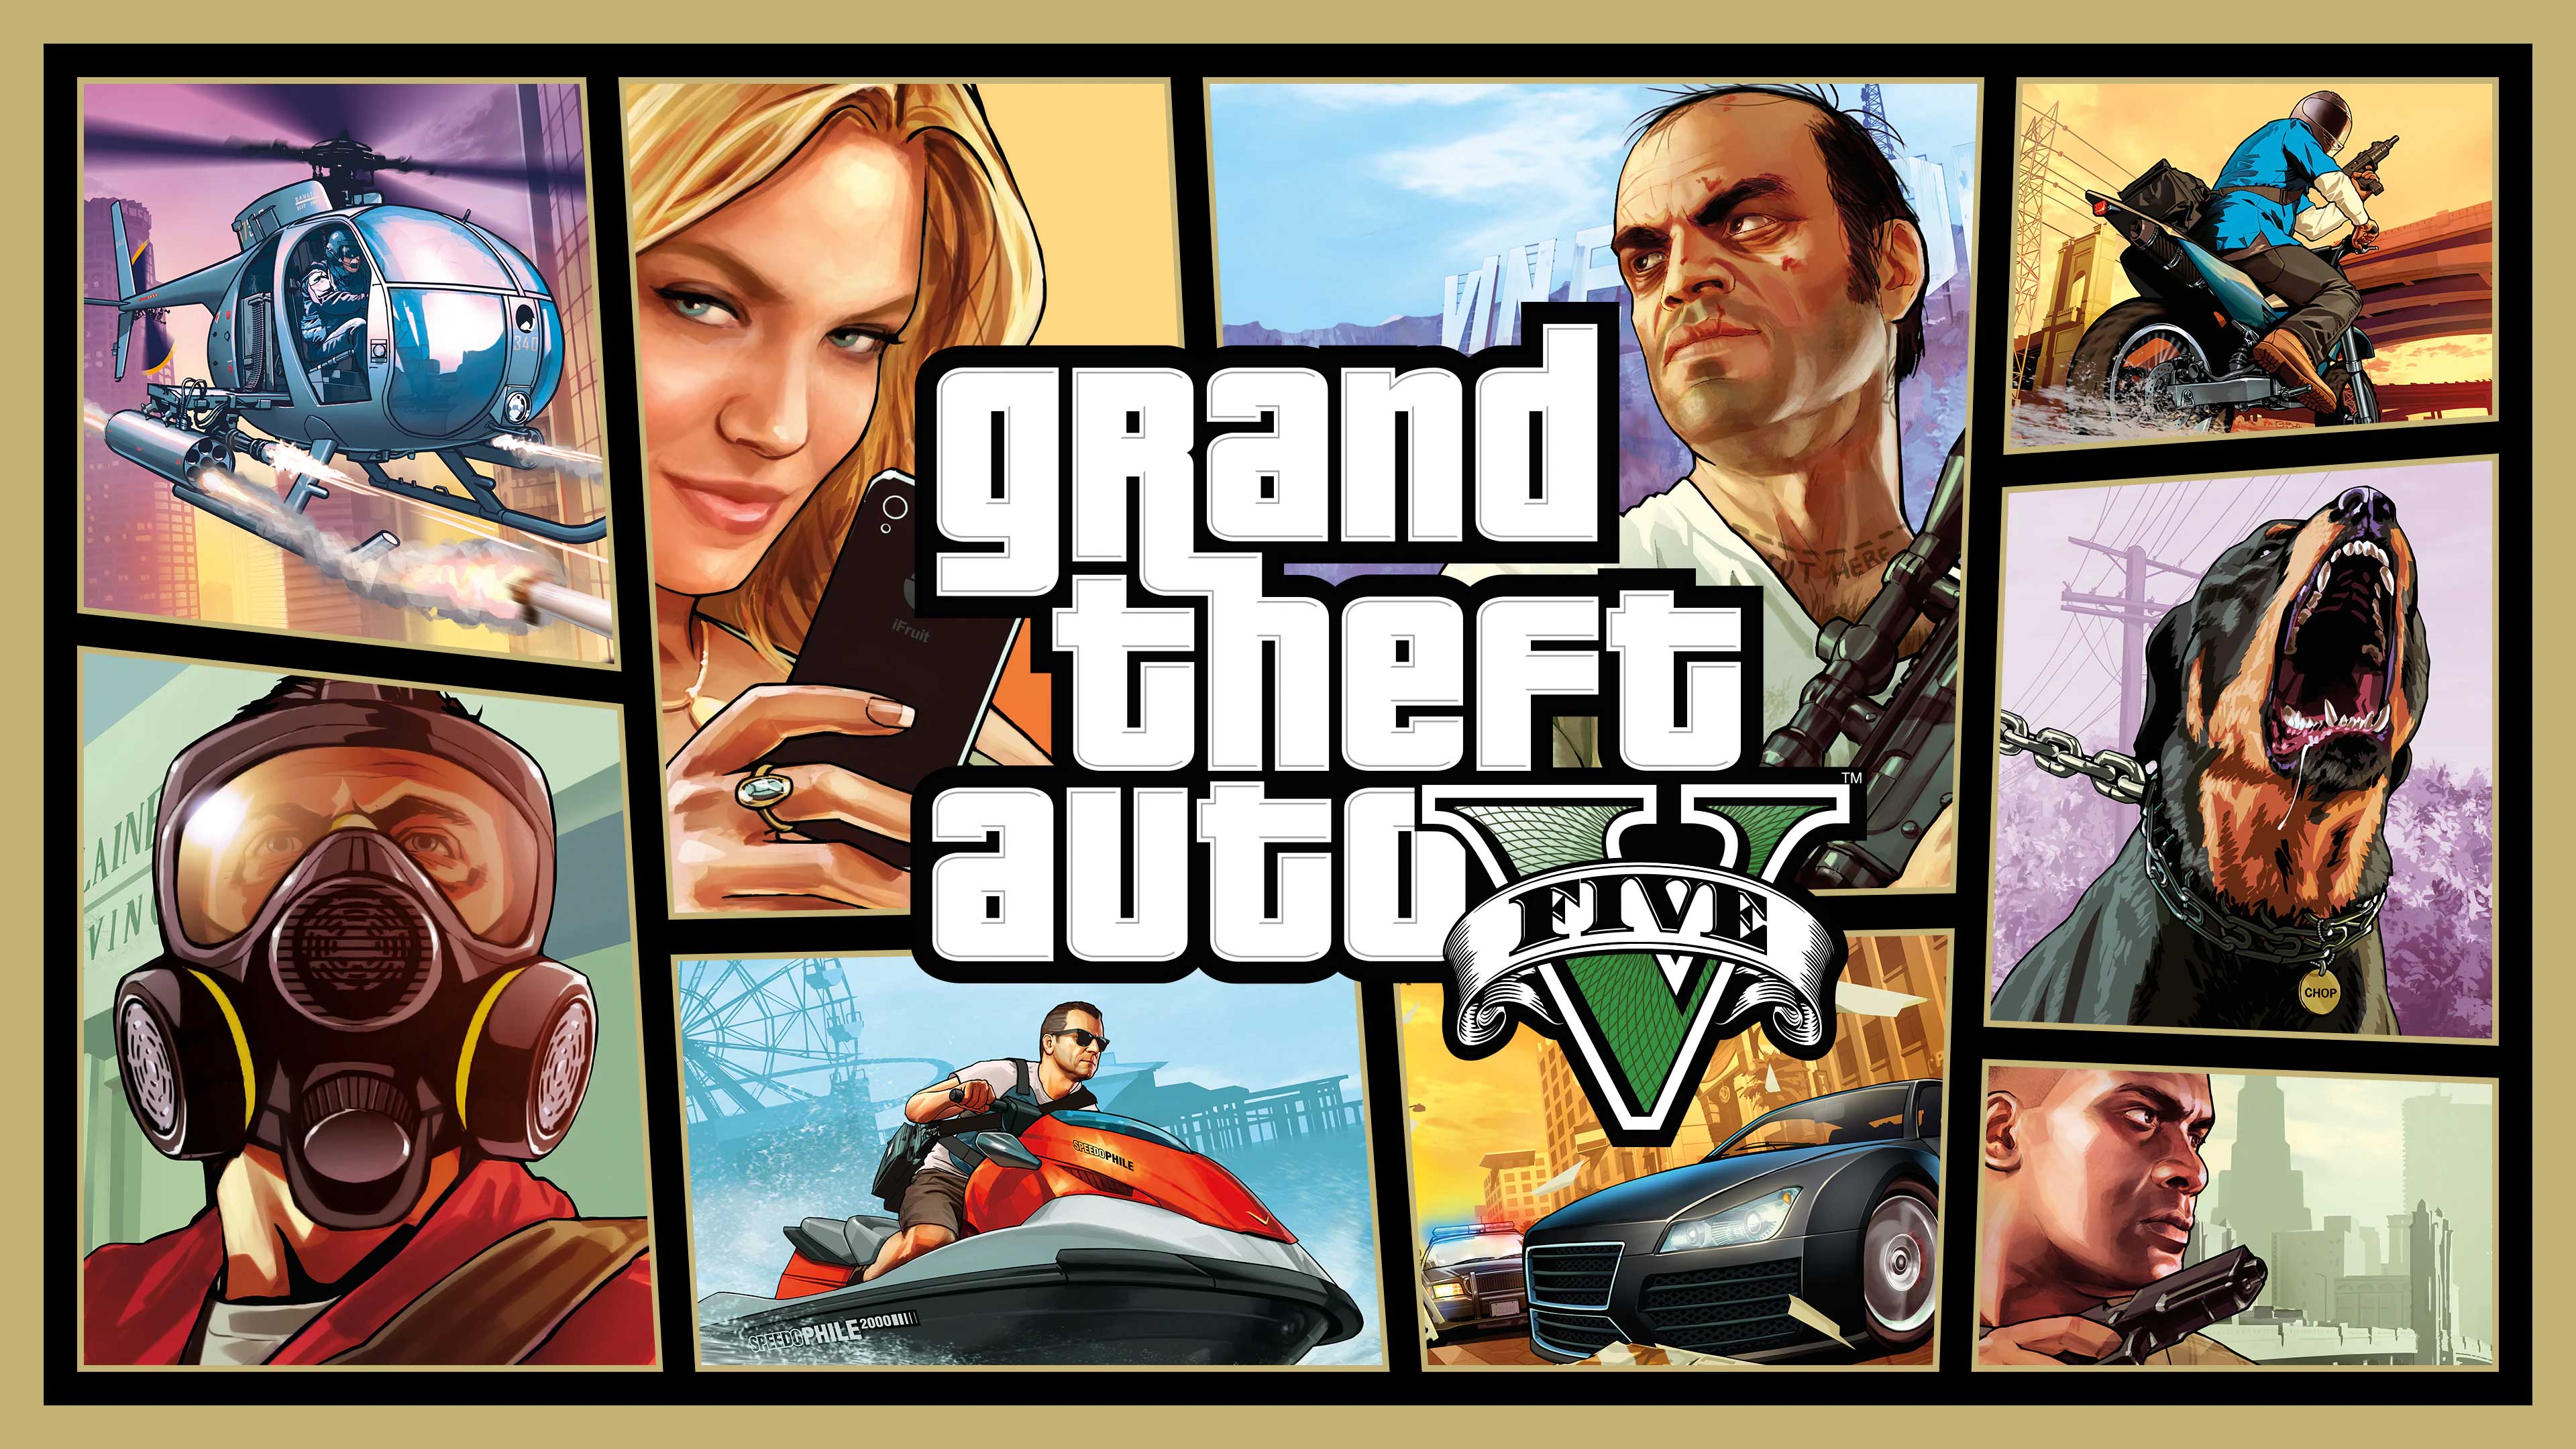 Grand Theft Auto V, Games Elements, gameselements.com